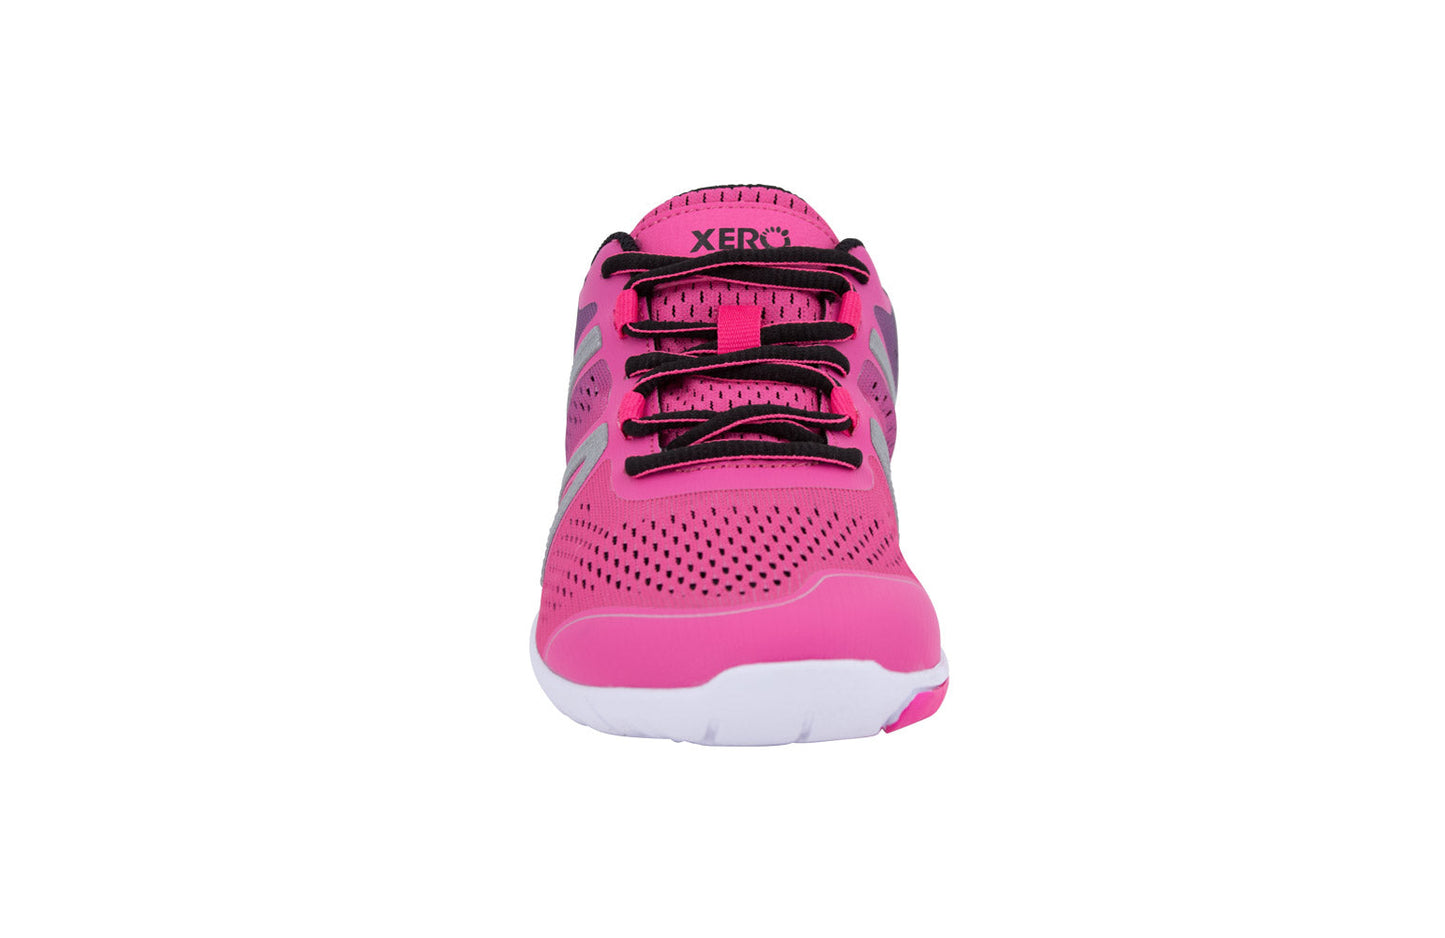 Xero Shoes HFS Womens barfods træningssko/løbesko til kvinder i farven pink glow, forfra